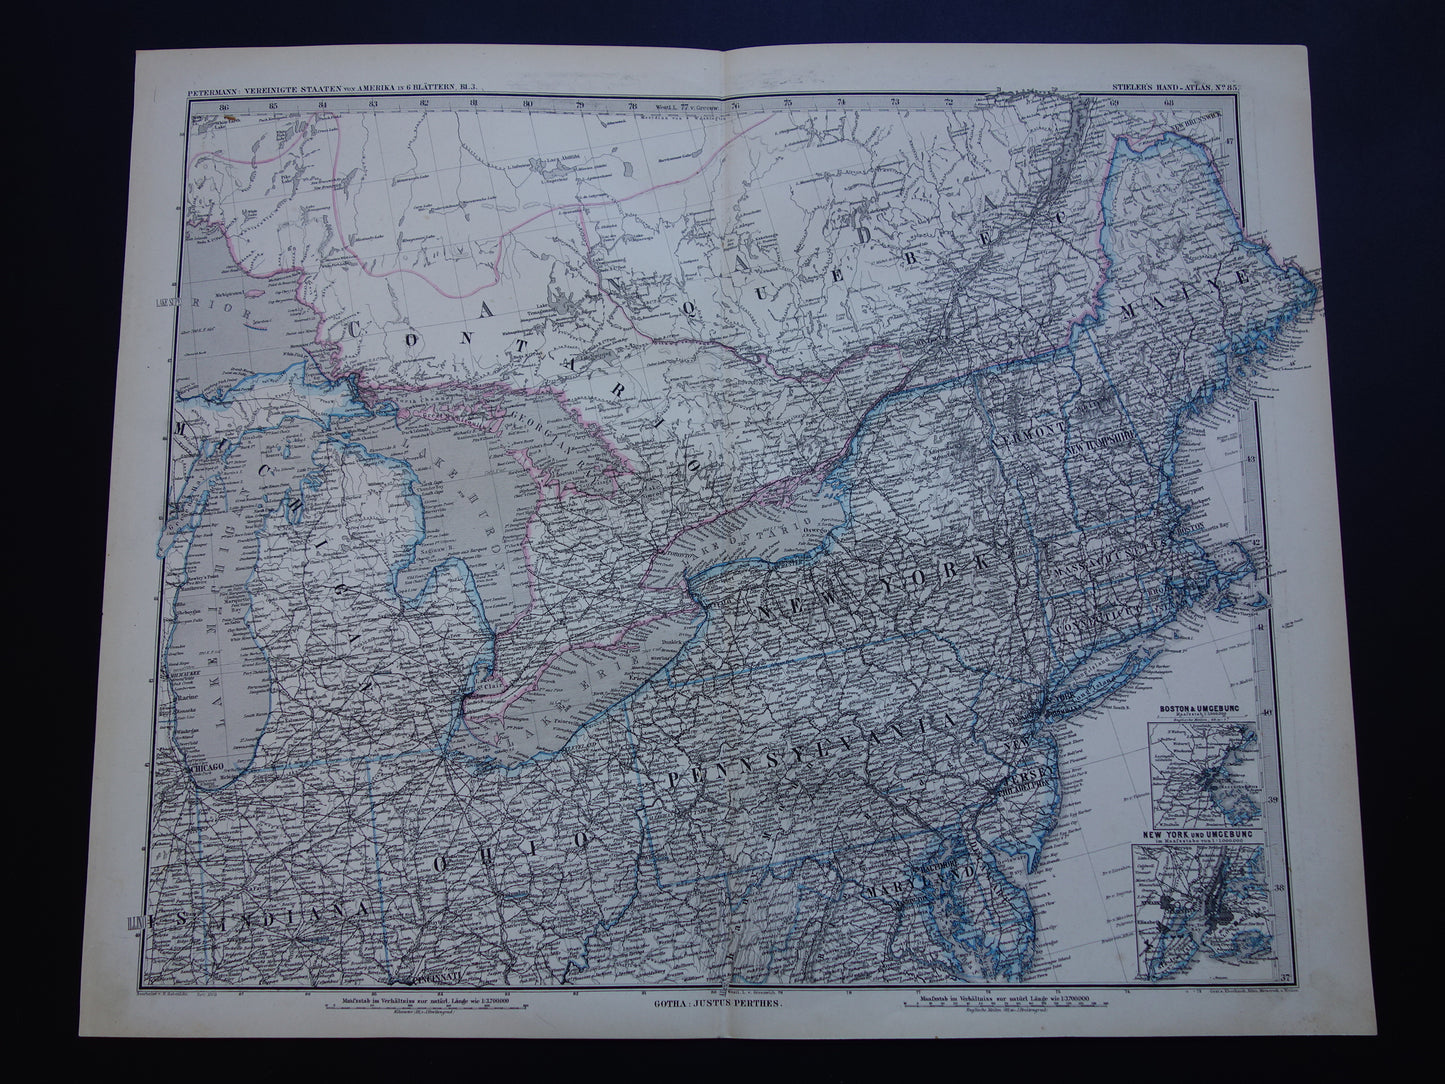 VERENIGDE STATEN Oude kaart van de VS uit 1886 originele grote antieke landkaart met jaartal - vintage poster van Amerika XL